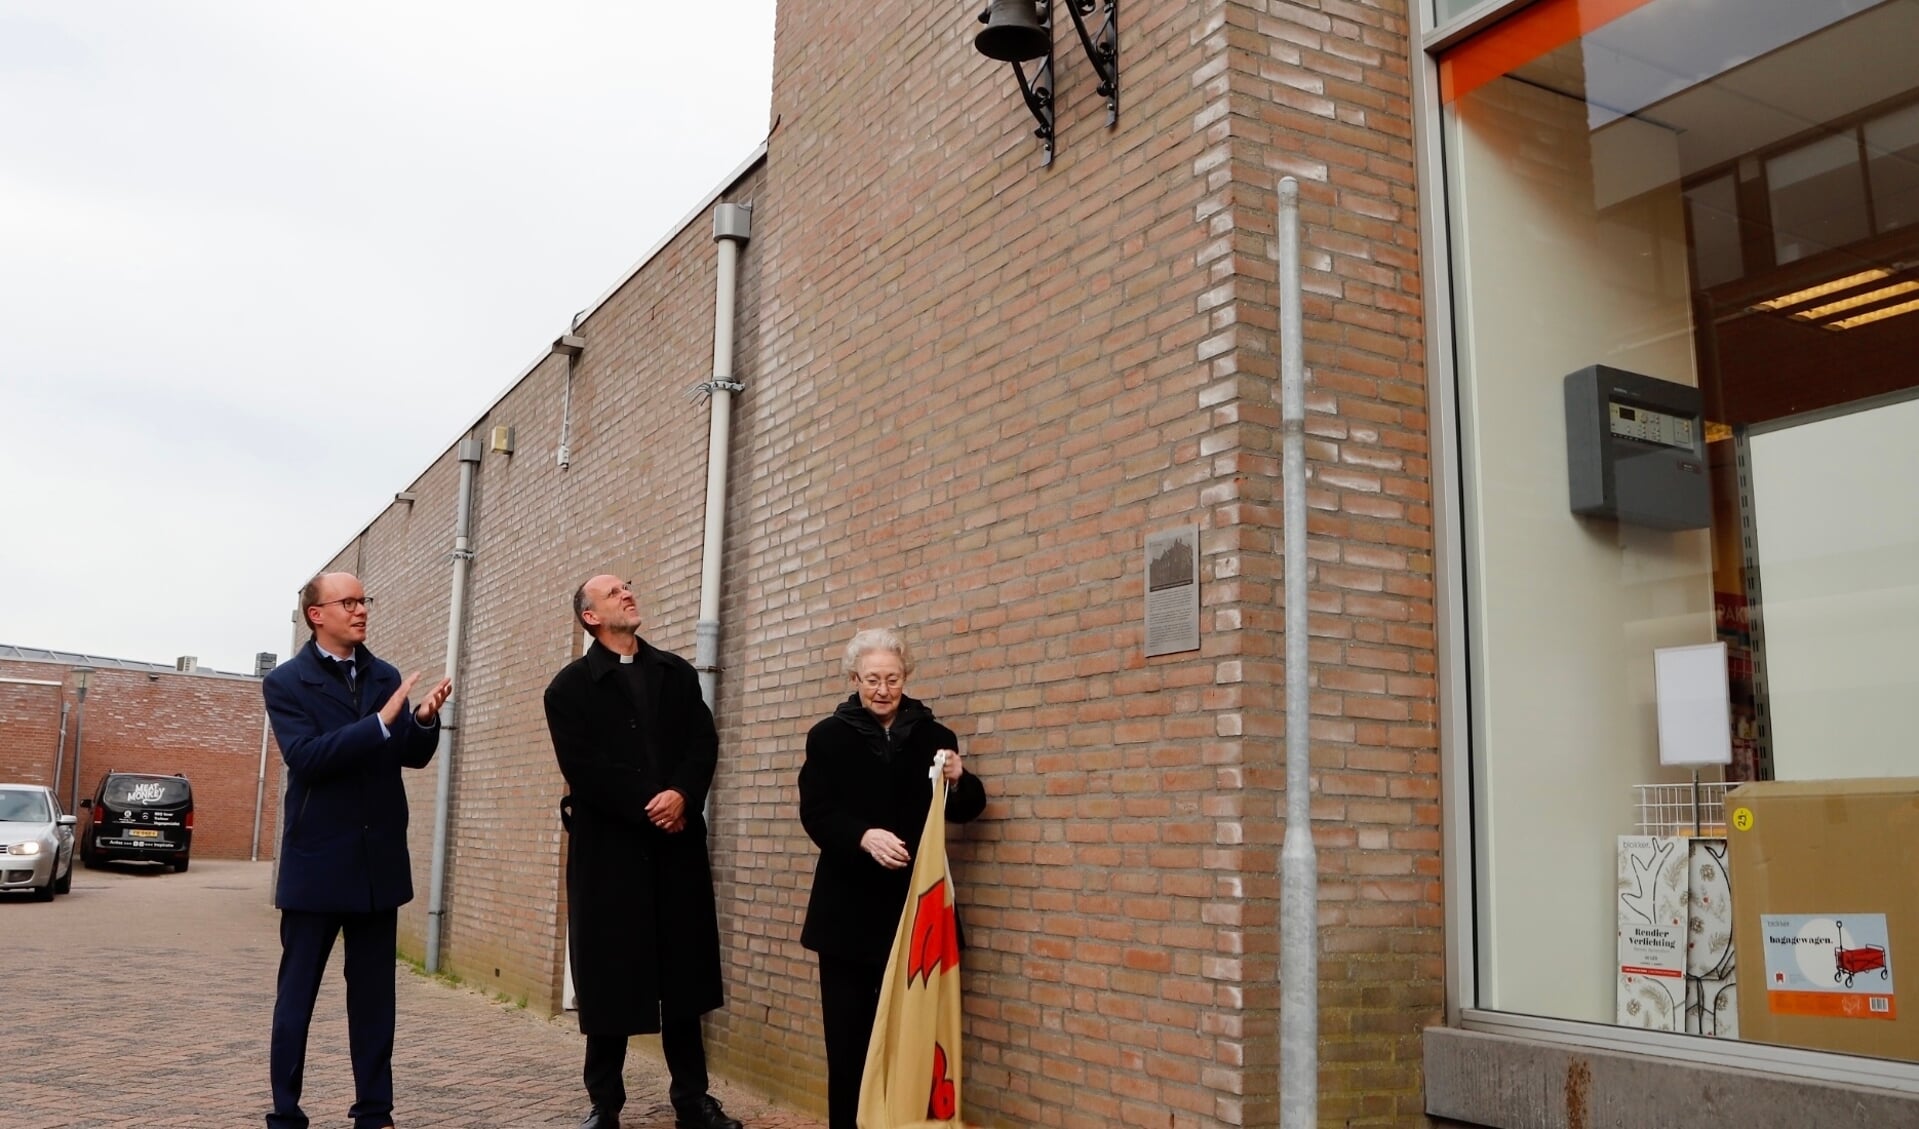 Joost Hendriks, pastoor Theo Lamers en zuster Monique van Oene onthulden maandag het historische luidklokje. (Foto: SK-Media)